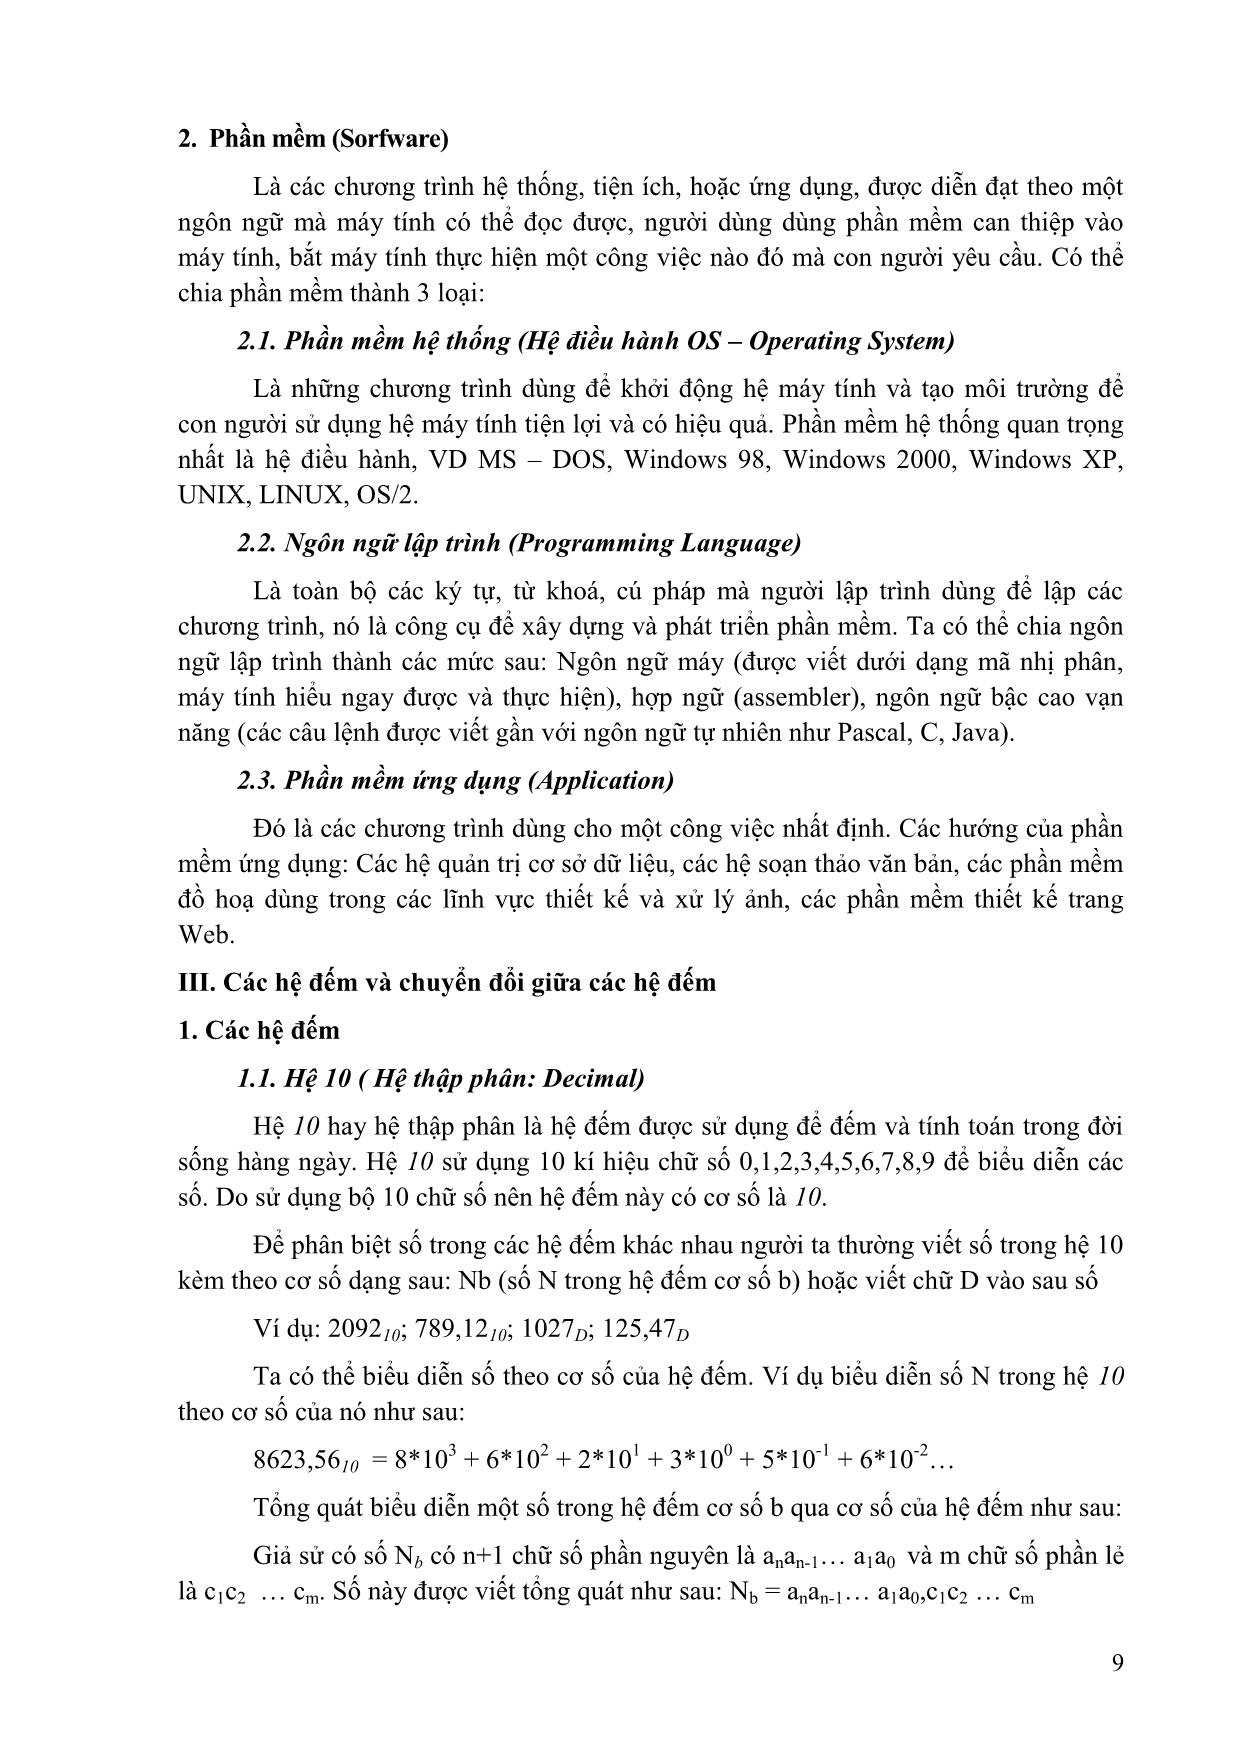 Giáo trình Tin học đại cương (Phần 1) trang 9